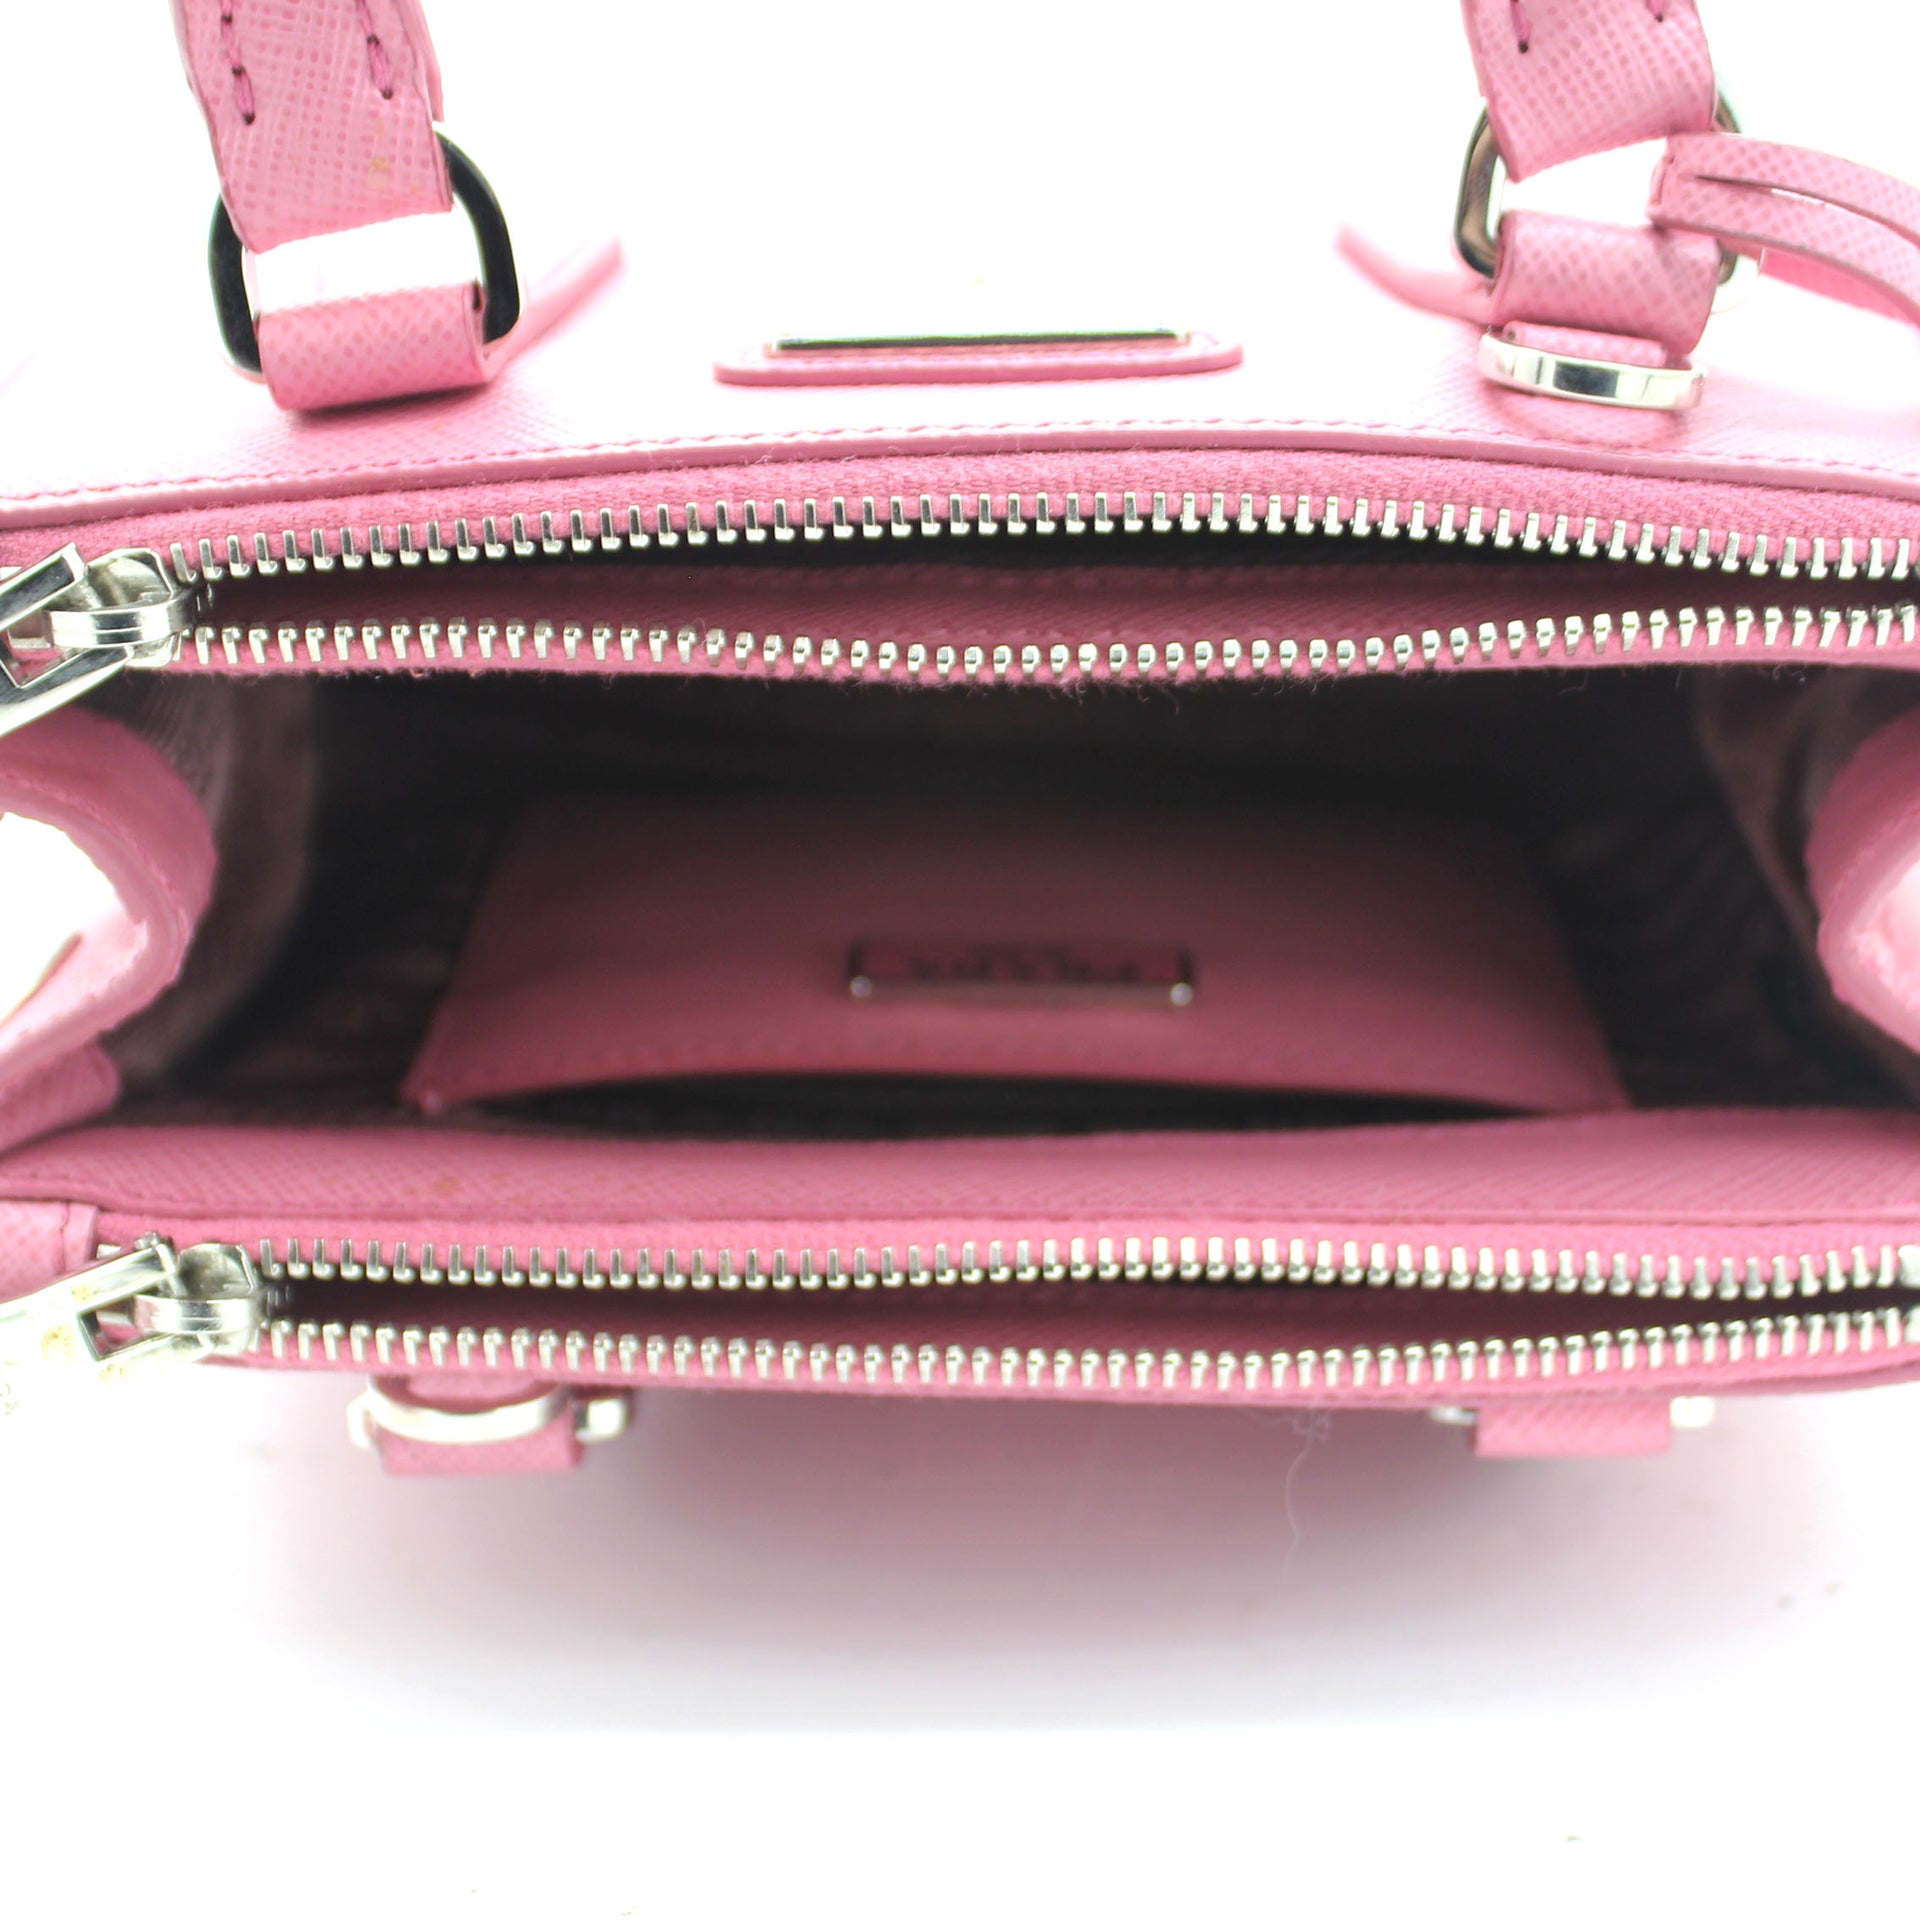 Saffiano Lux Leather Micro Galleria Tote Petal Pink